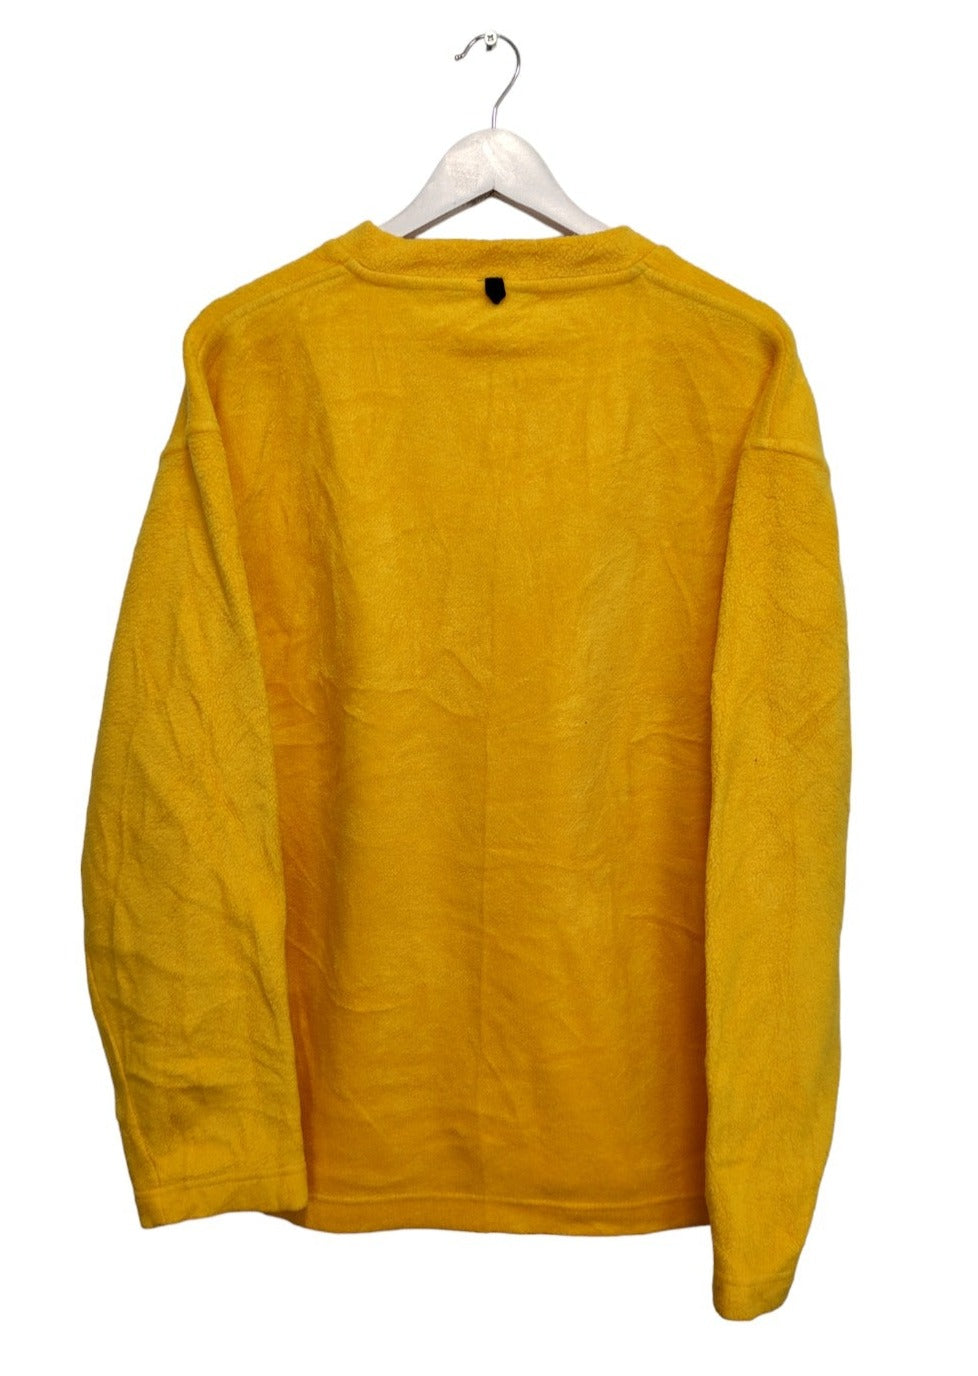 Φλις, Αθλητική Ανδρική Μπλούζα HOLLOWAY σε Κροκί Χρώμα (Large)